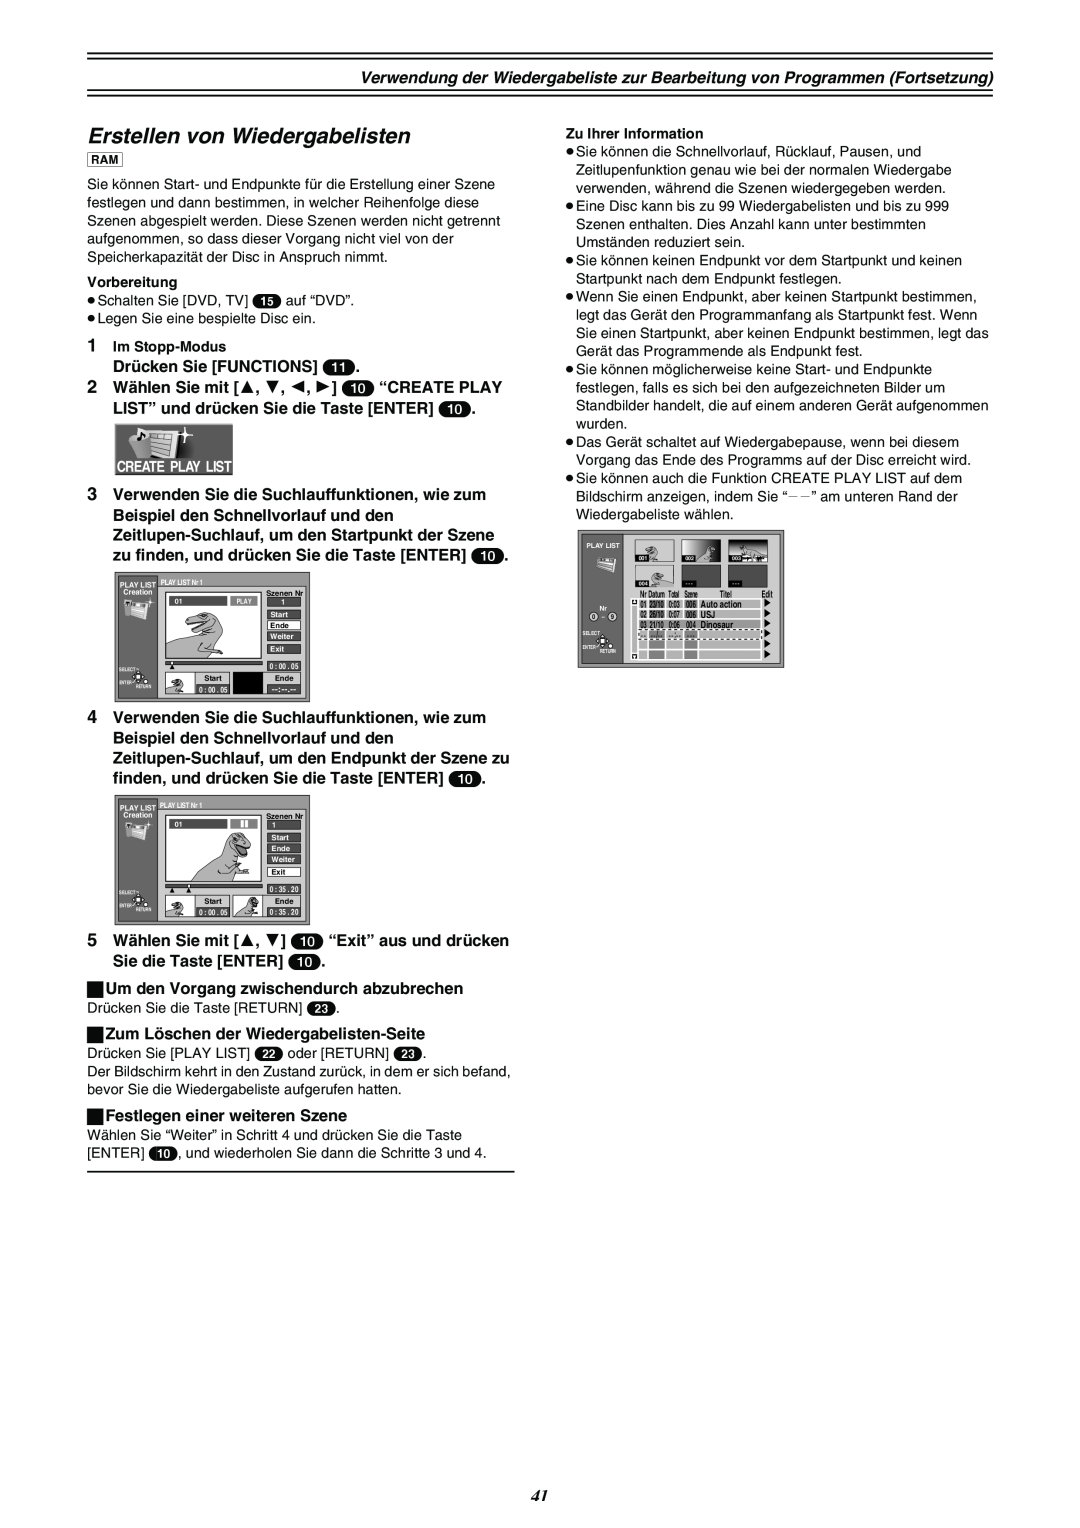 Panasonic DMR-E30 manual Erstellen von Wiedergabelisten, Edit 